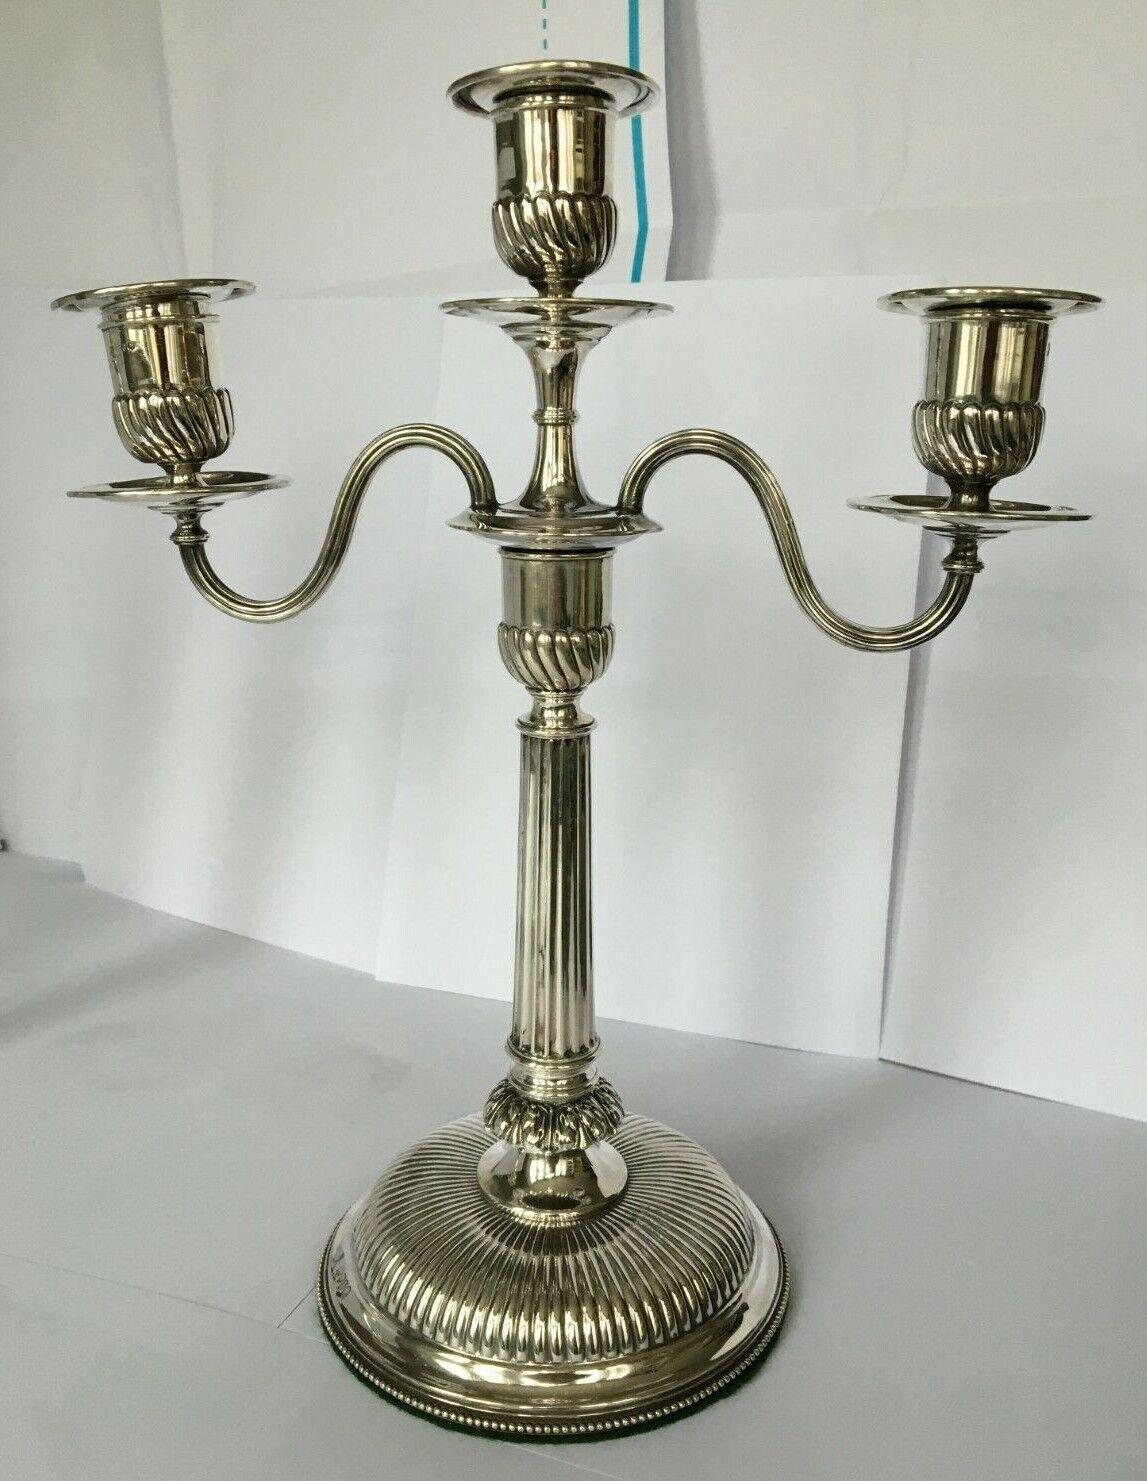 Dies ist ein fabelhaftes Paar von antiken viktorianischen Sterling Silber, drei Licht, zwei Zweige Tabelle korinthischen Spalte Kandelaber. Die Kandelaber sind zur leichteren Reinigung abnehmbar. Die Kandelaber haben gefüllte Sockel für Stabilität